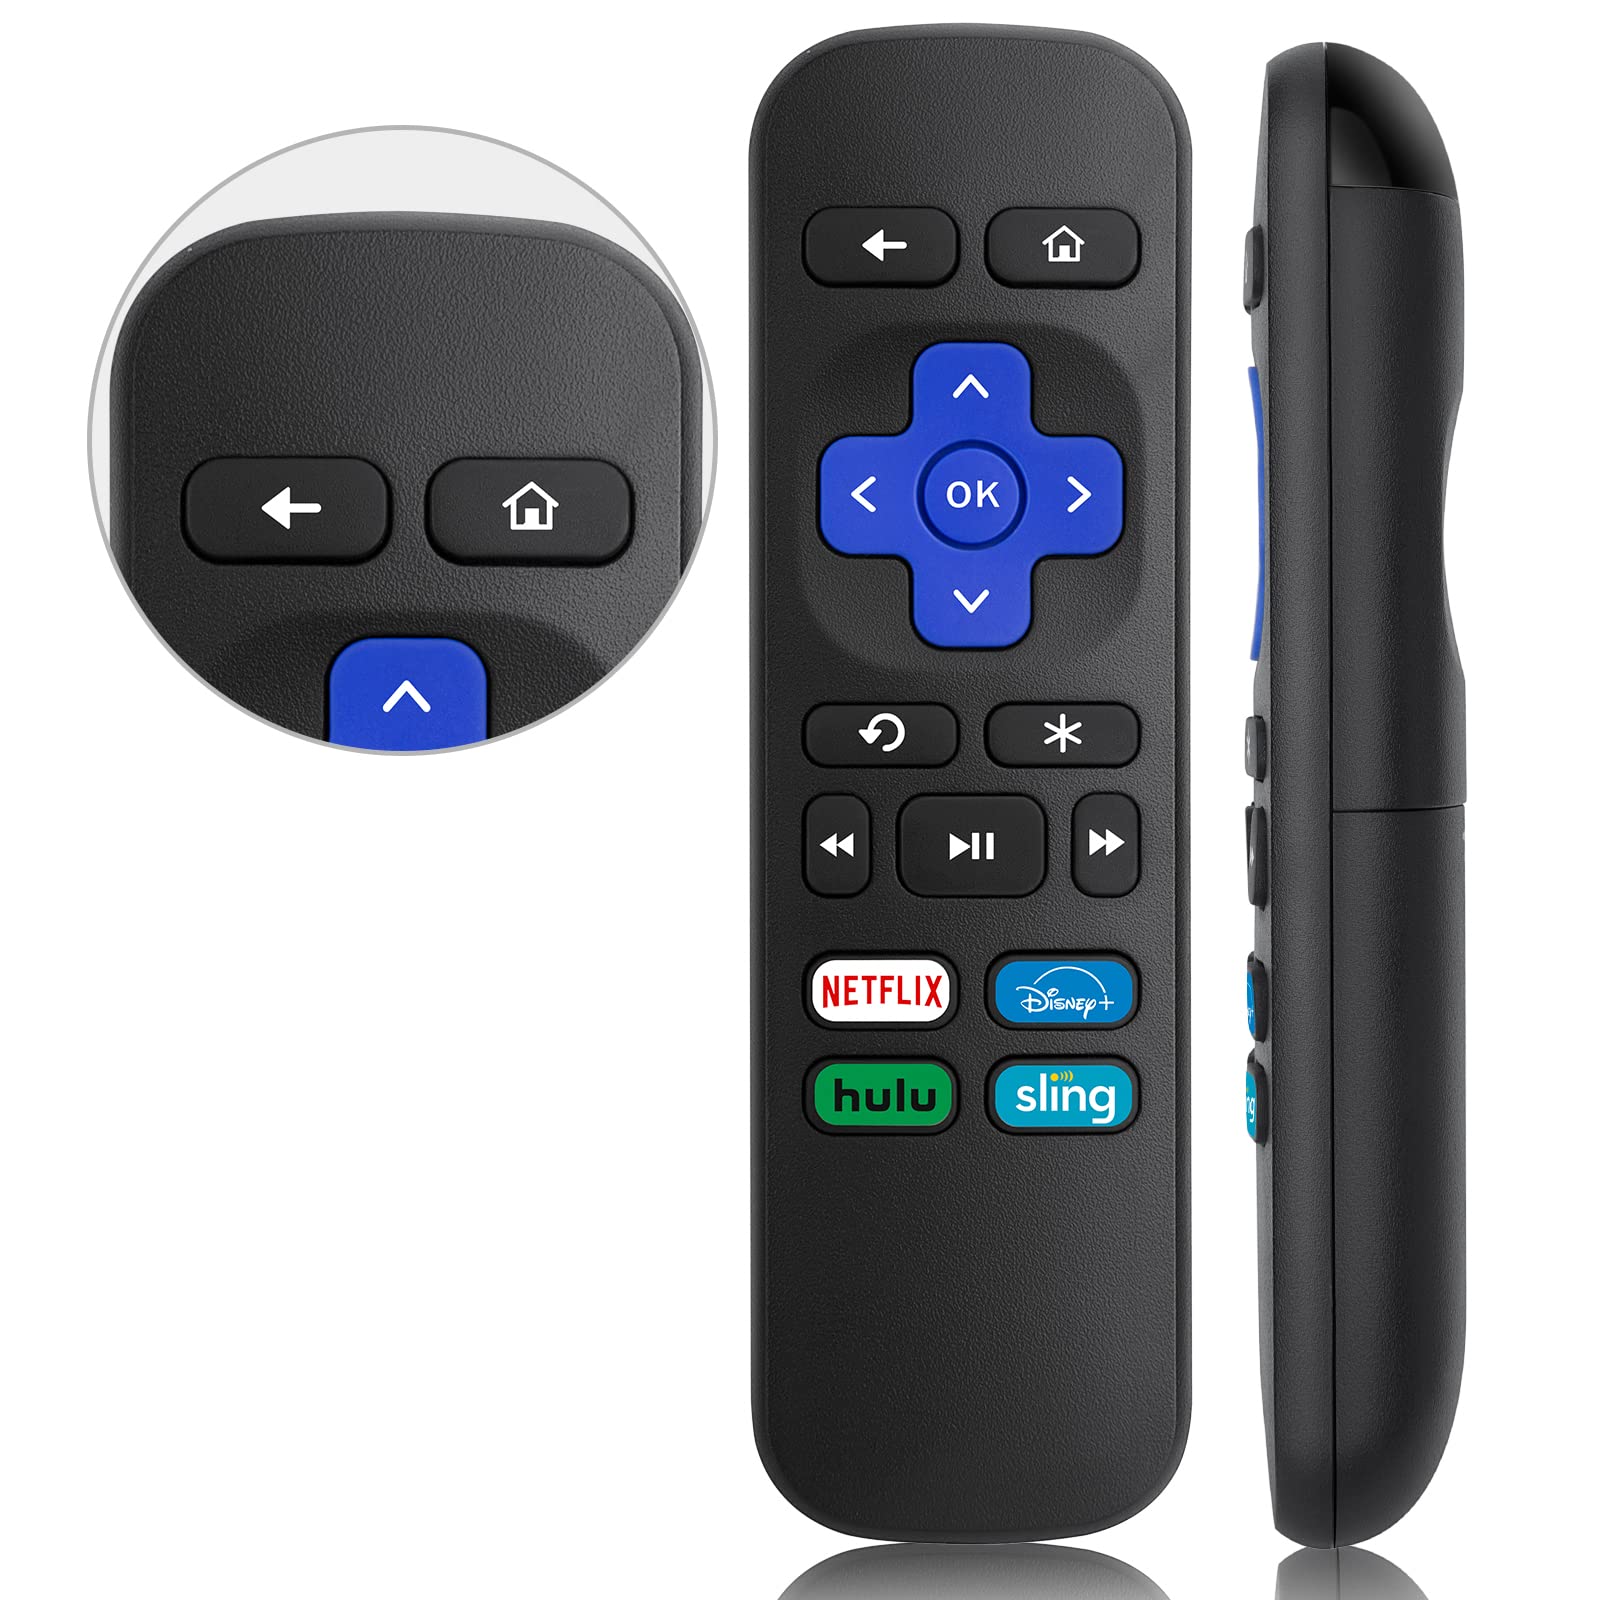 Roku remote control